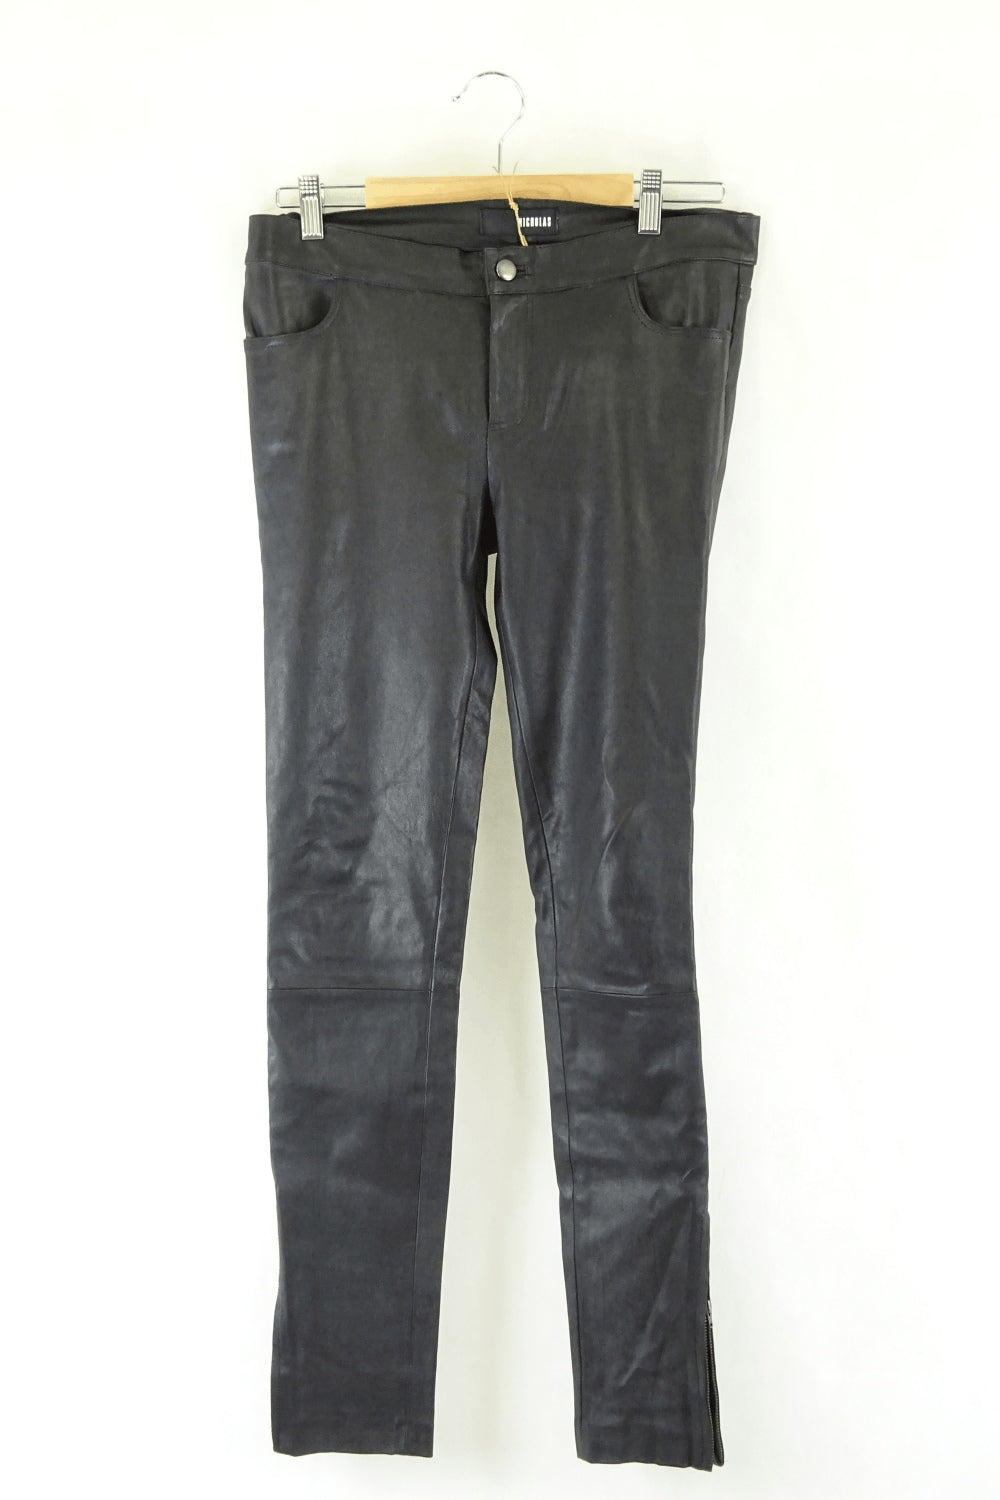 Nicholas Black Leather Jeans L